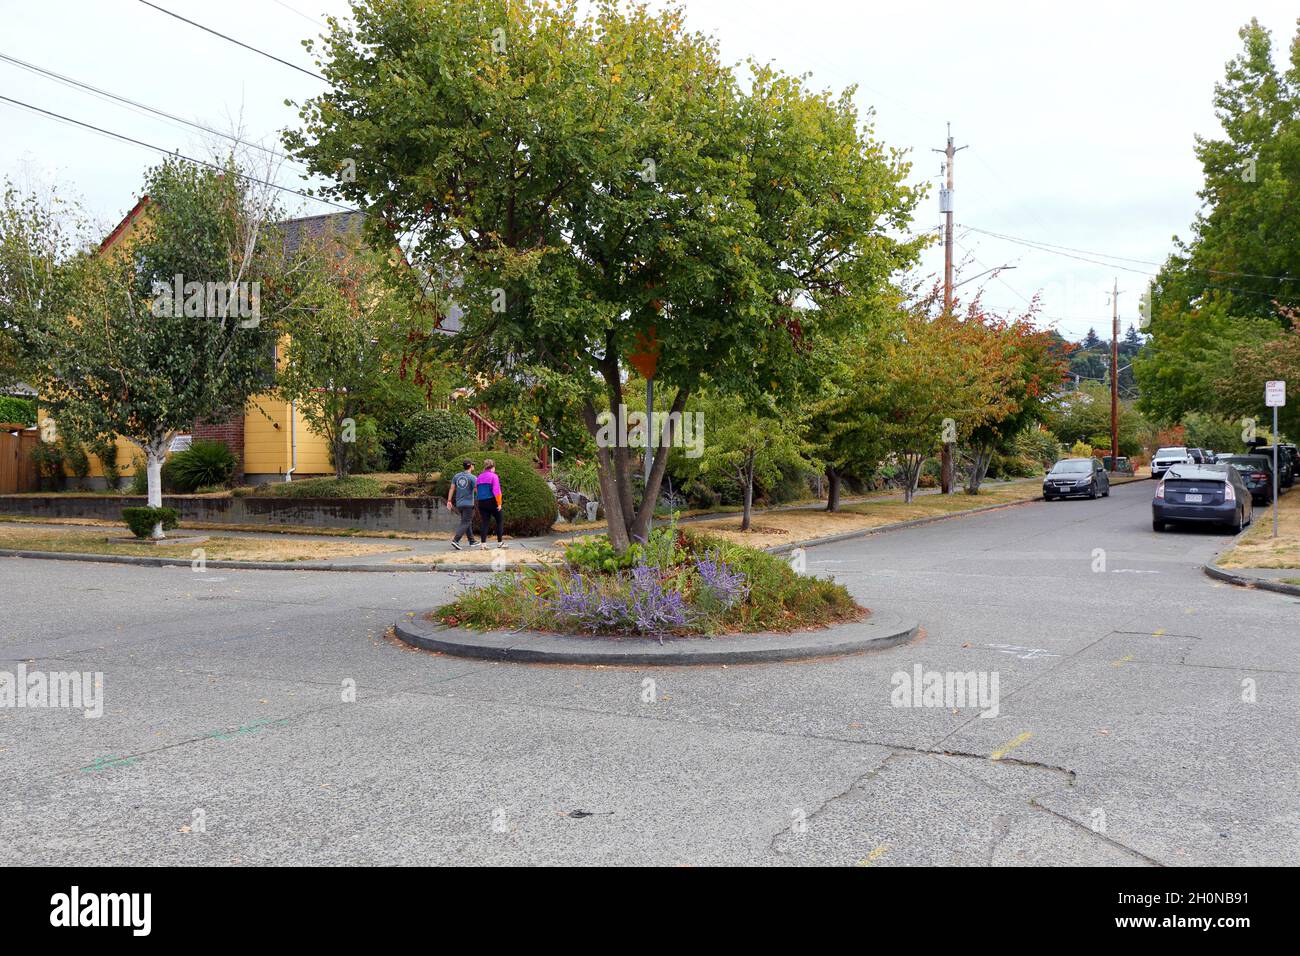 Un cerchio di traffico in un quartiere di Seattle. I cerchi di traffico vengono utilizzati per calmare il traffico e ridurre conflitti e collisioni negli incroci. Foto Stock